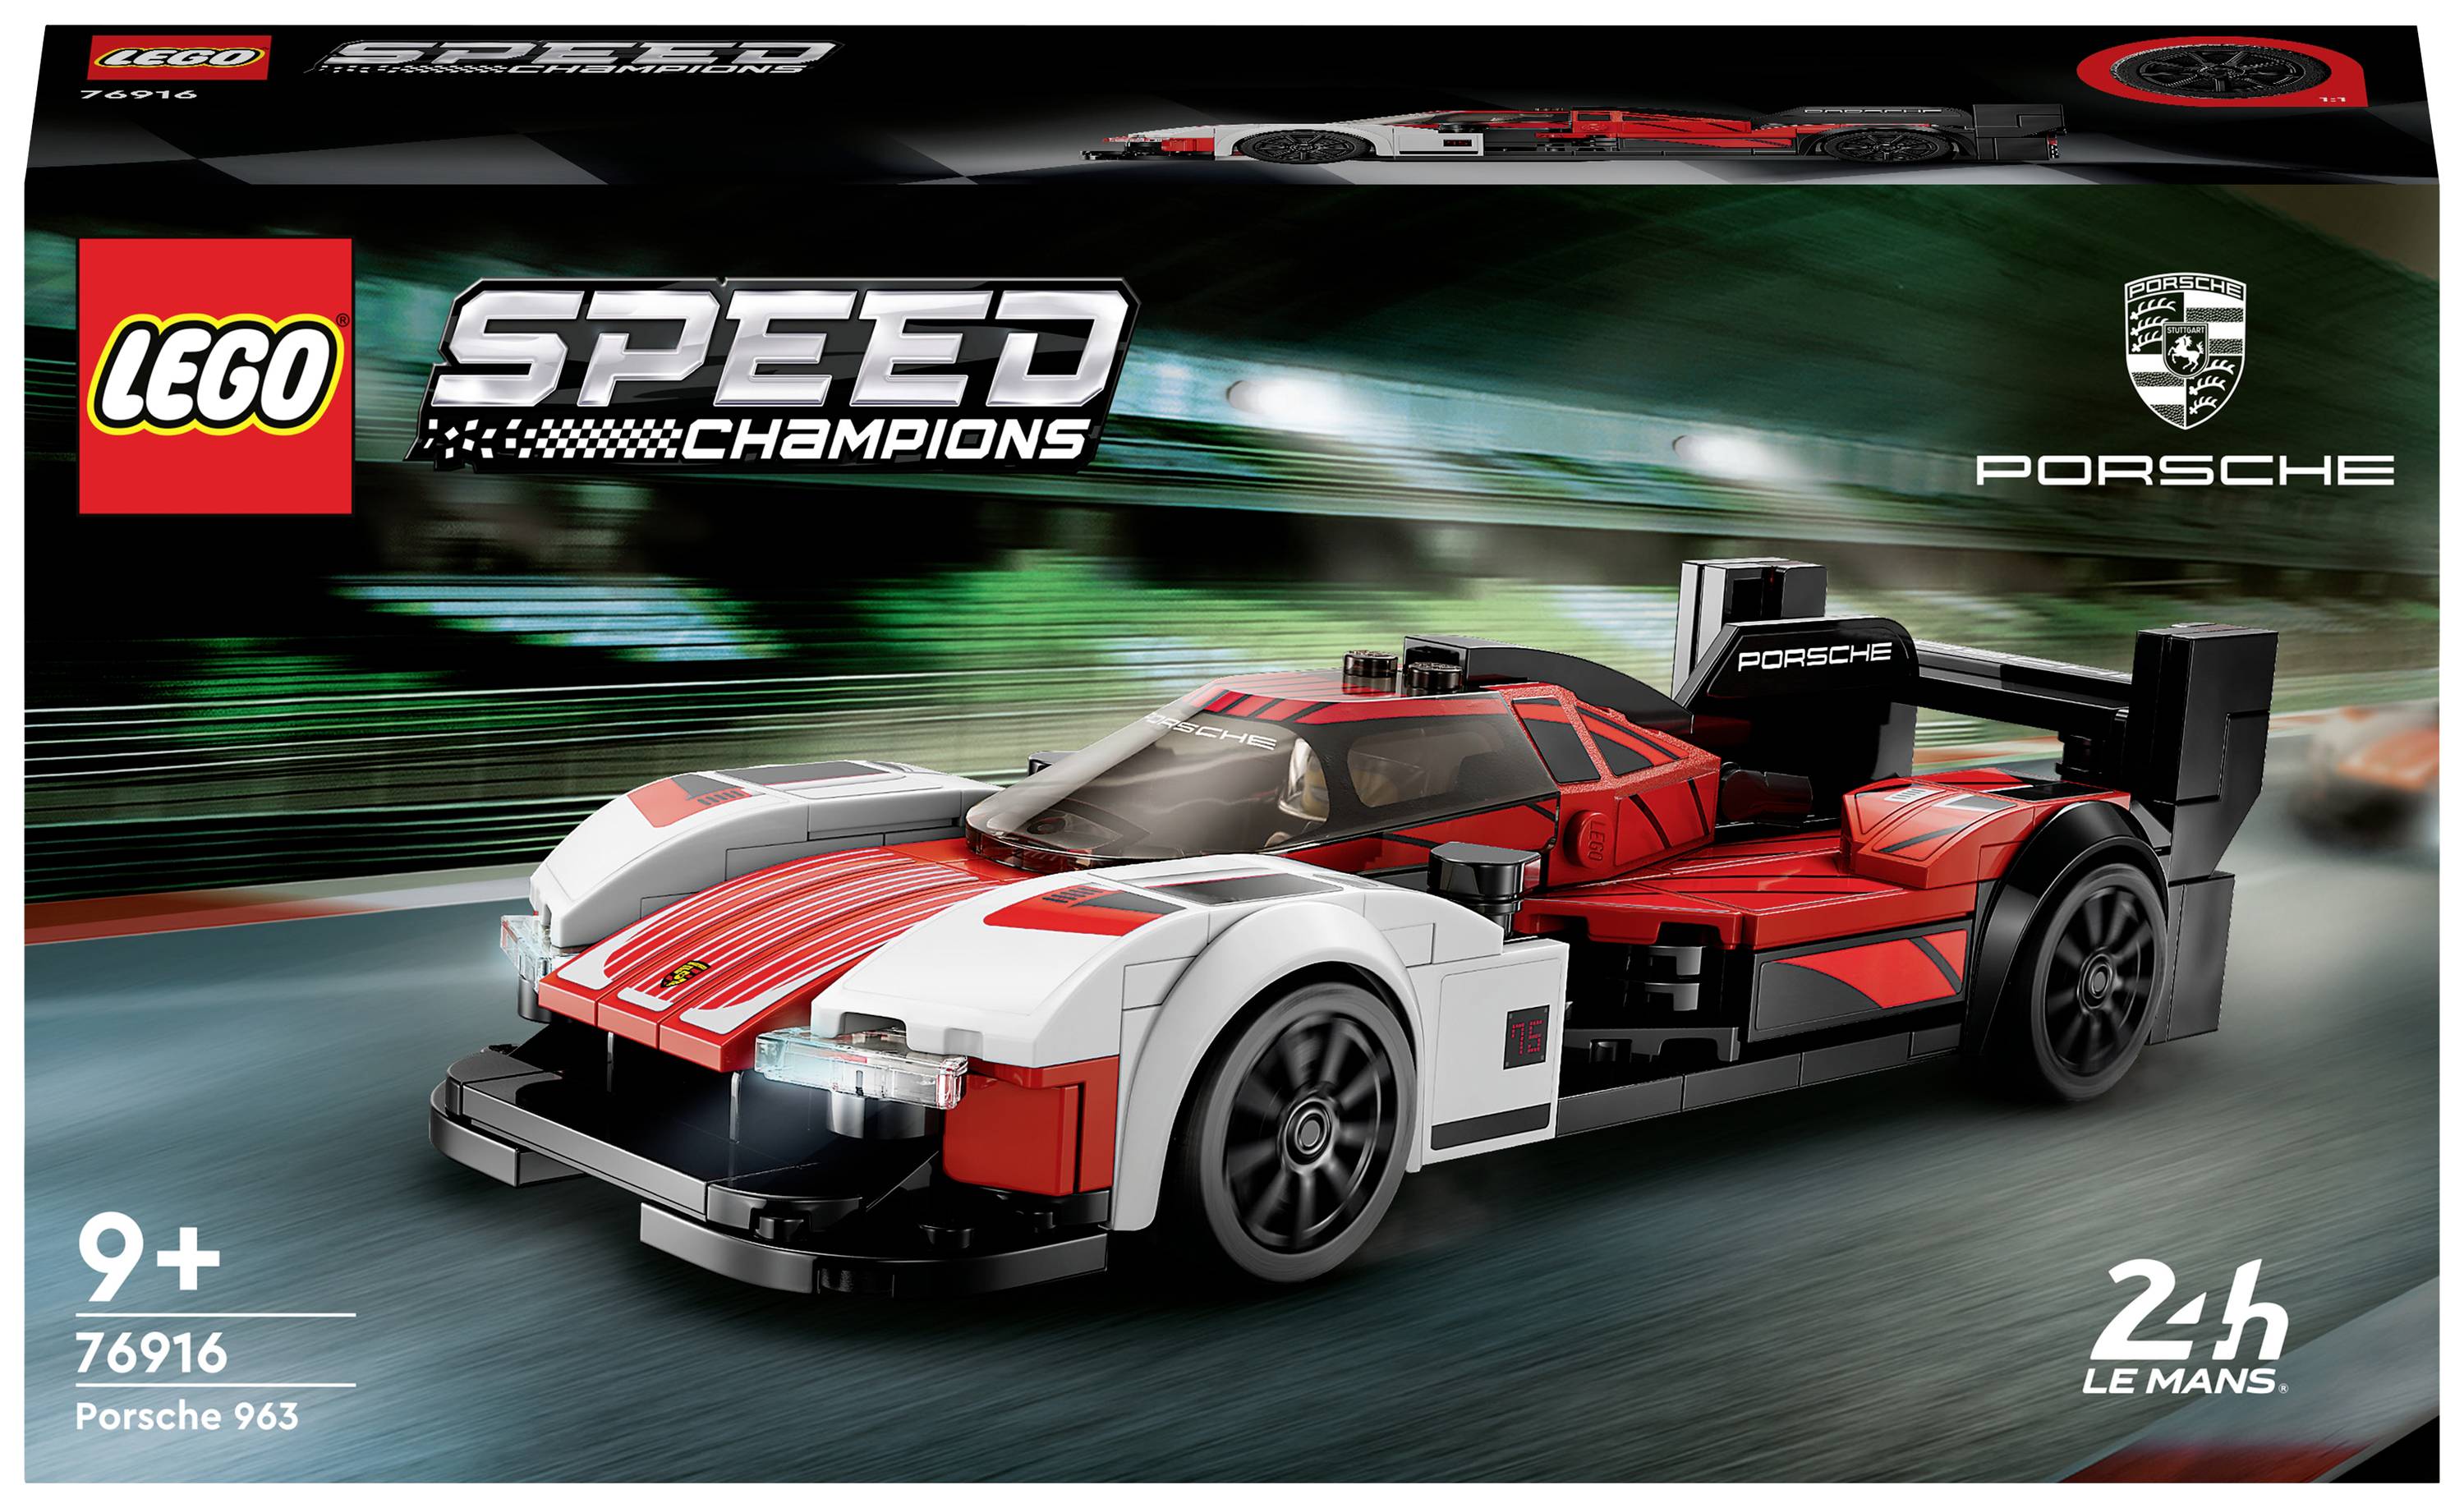 Acquista 76916 LEGO® SPEED CHAMPIONS Porsche 963 da Conrad